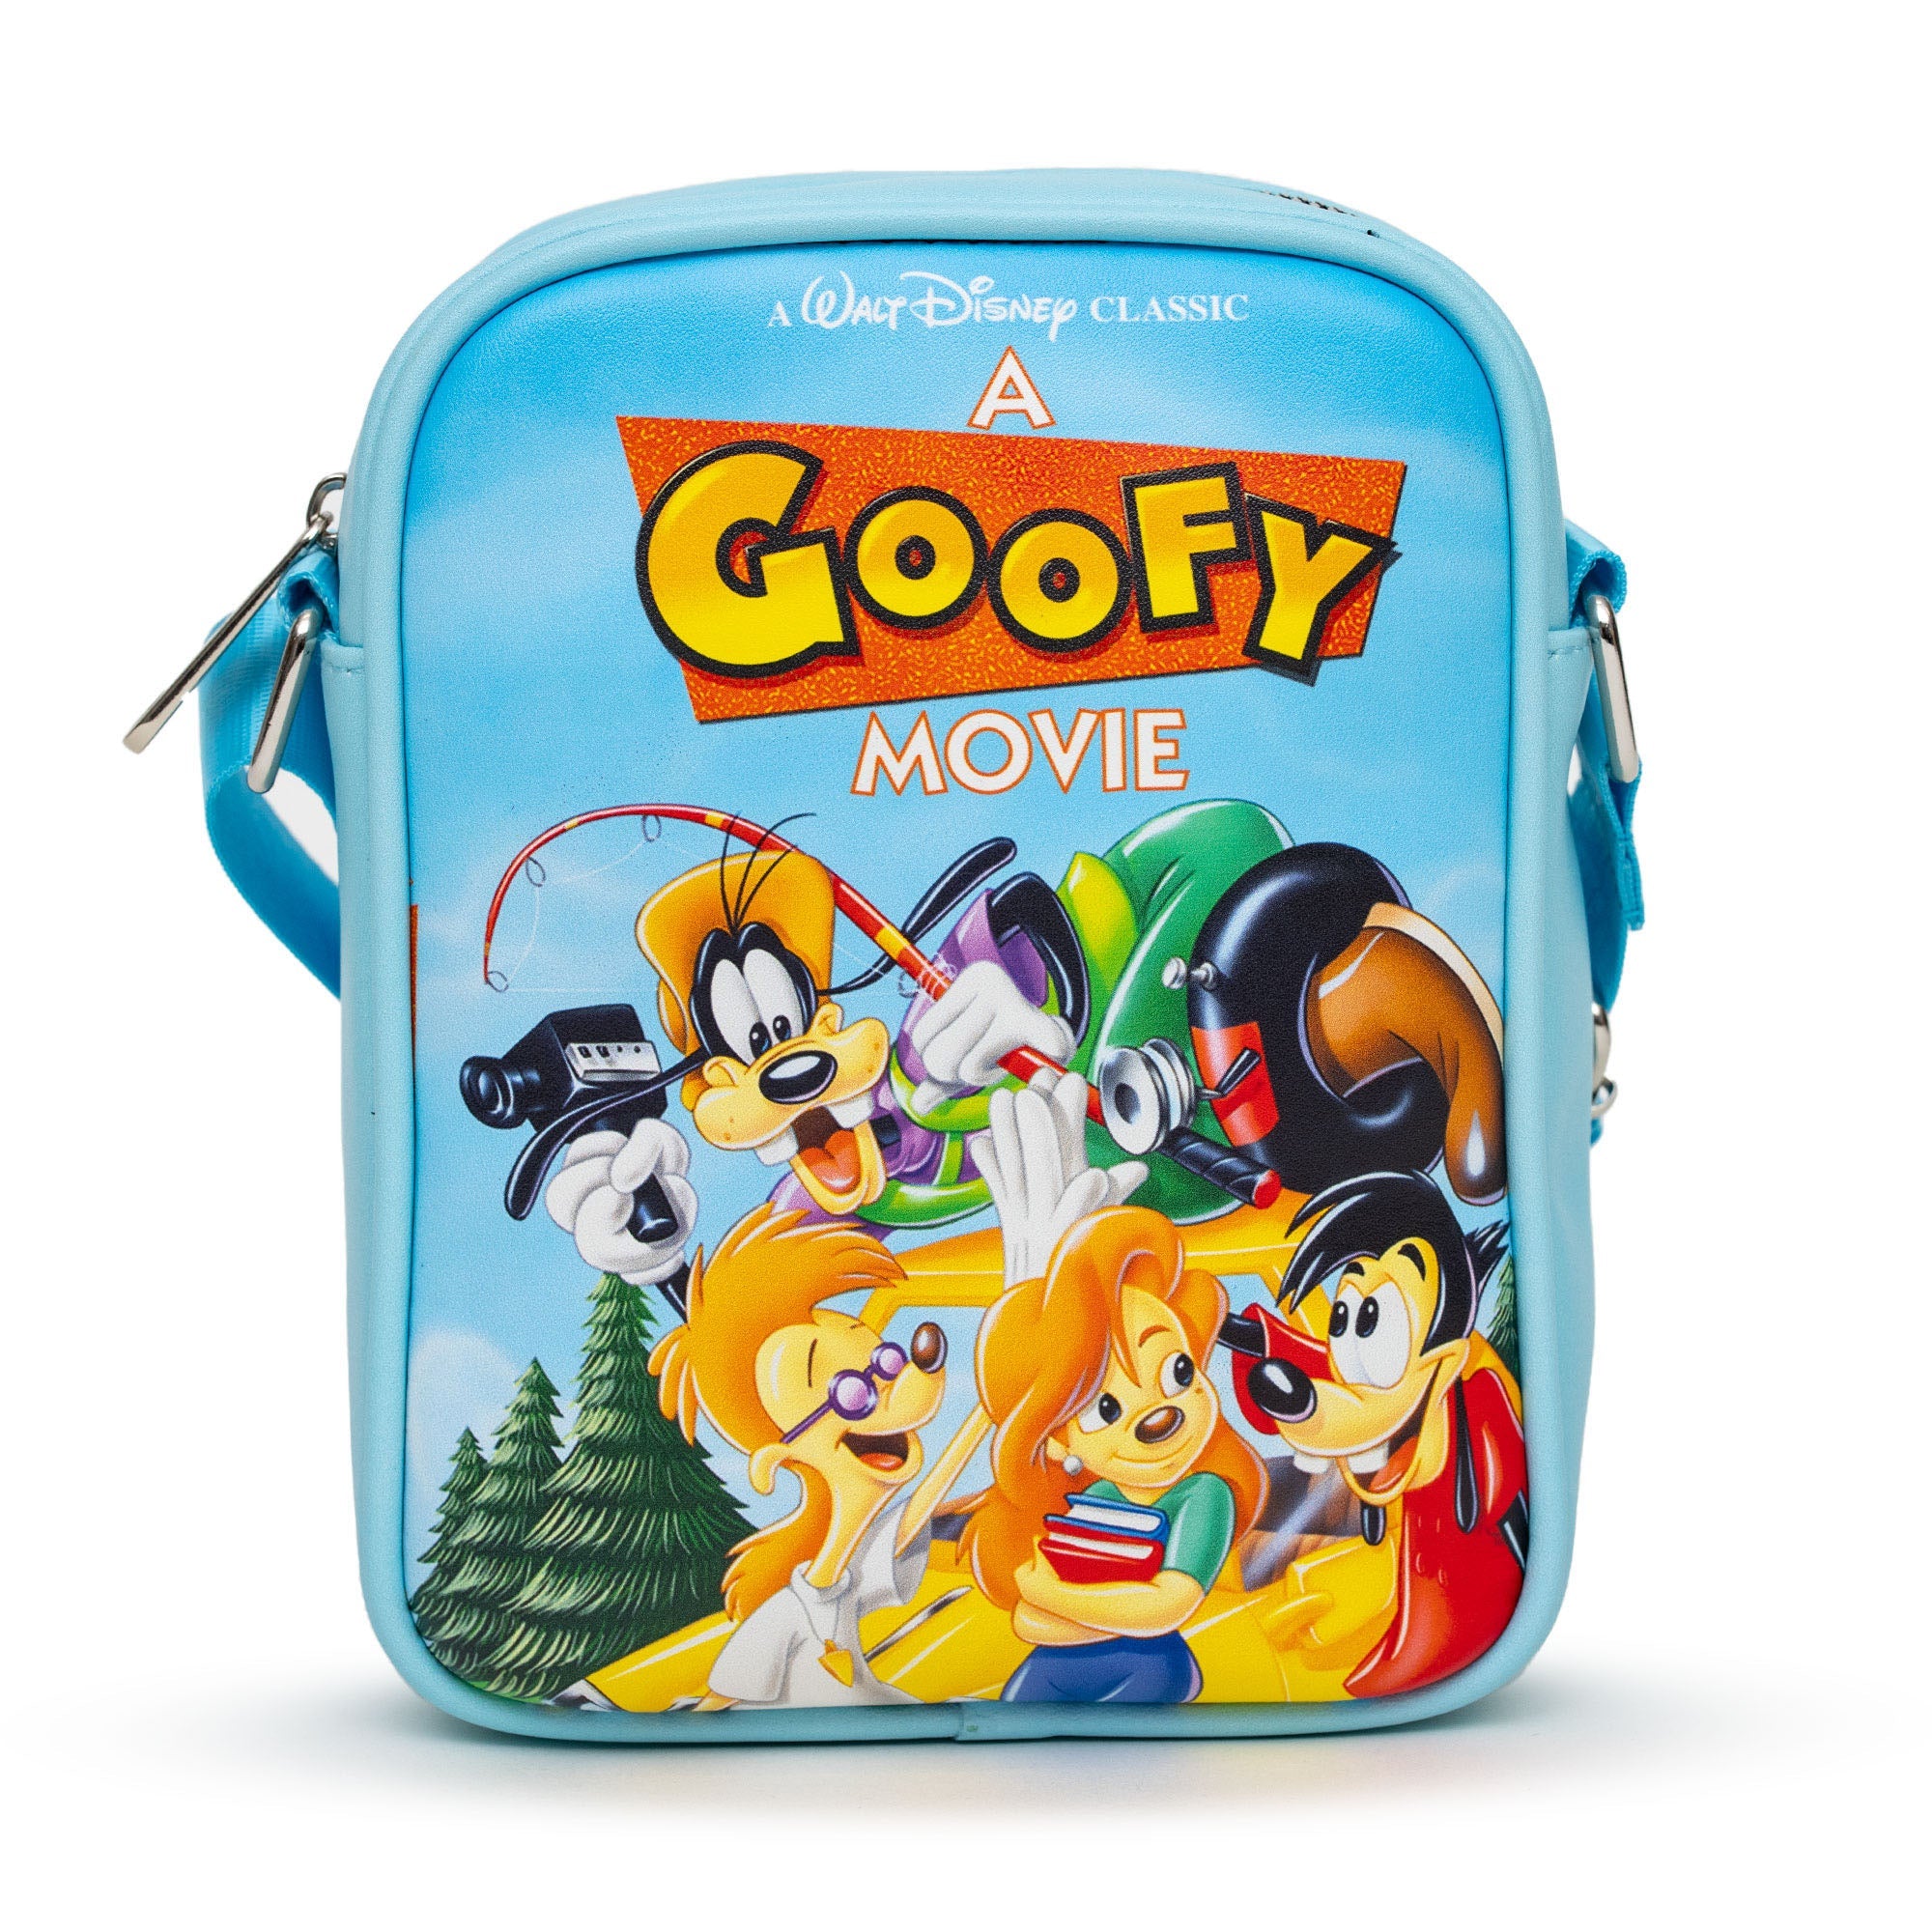 Disney A Goofy Movie VHS Movie Box Replica Crossbody Bag